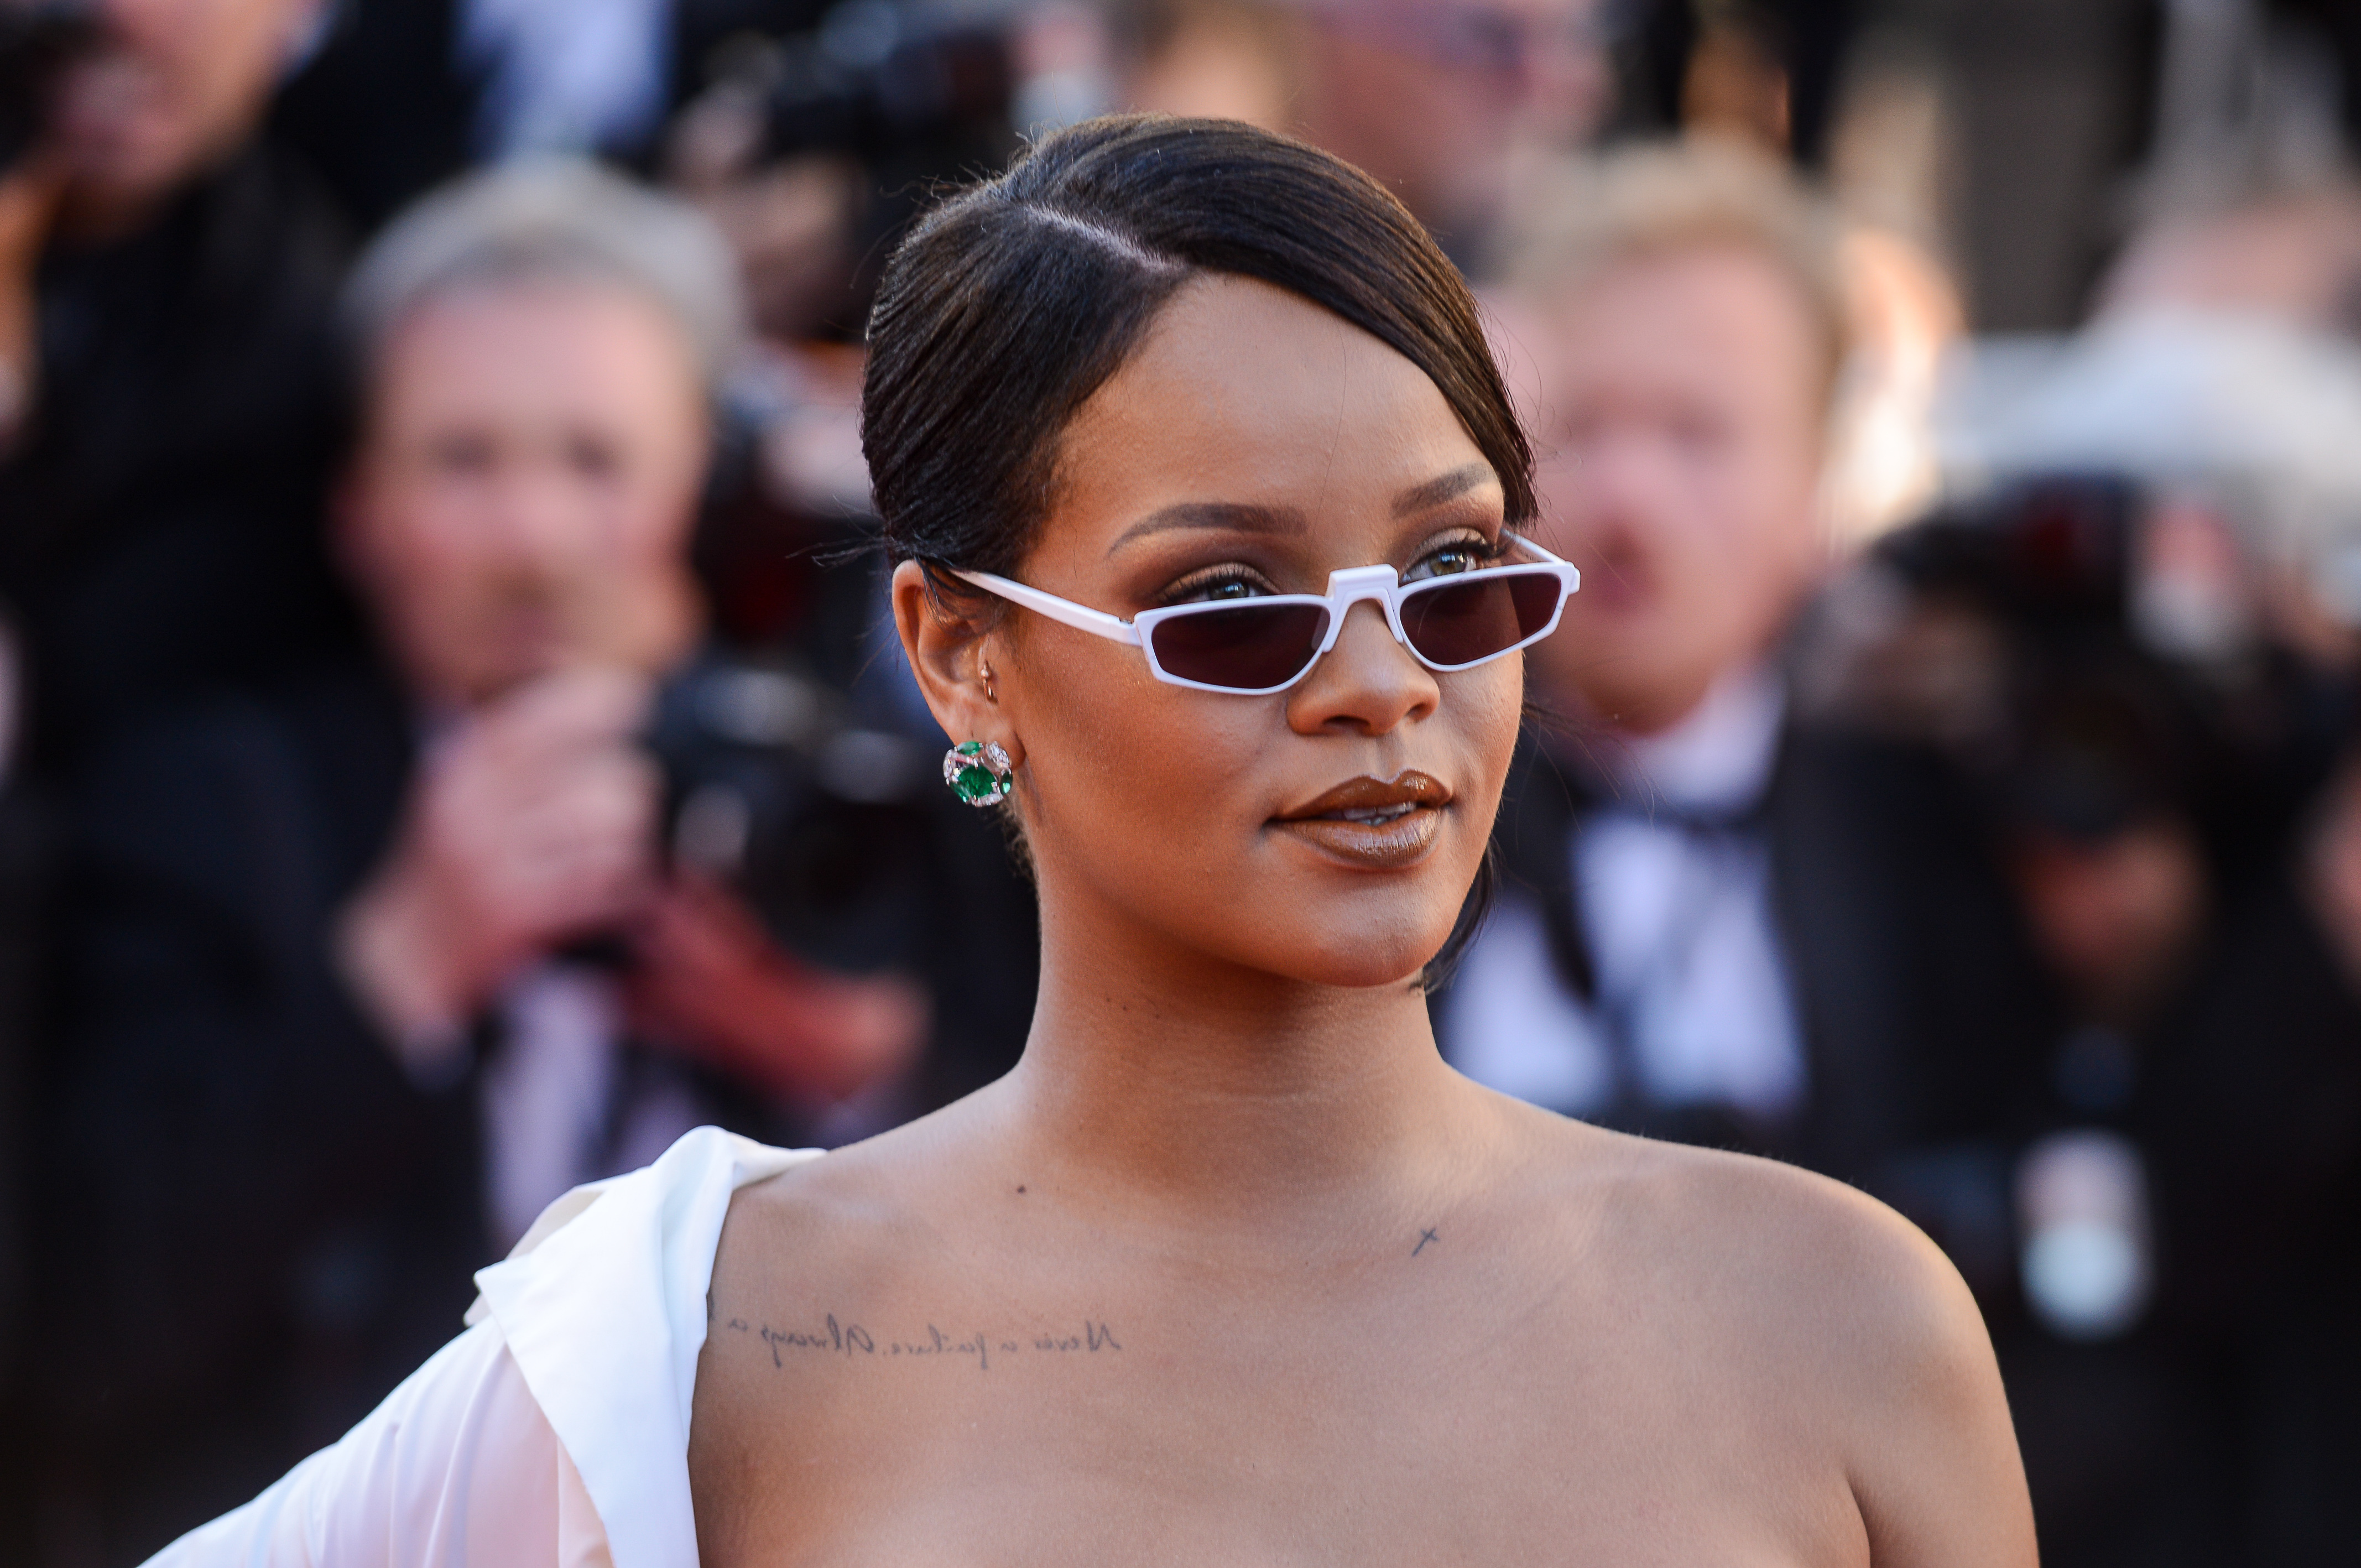 Rihanna at Okja premiere